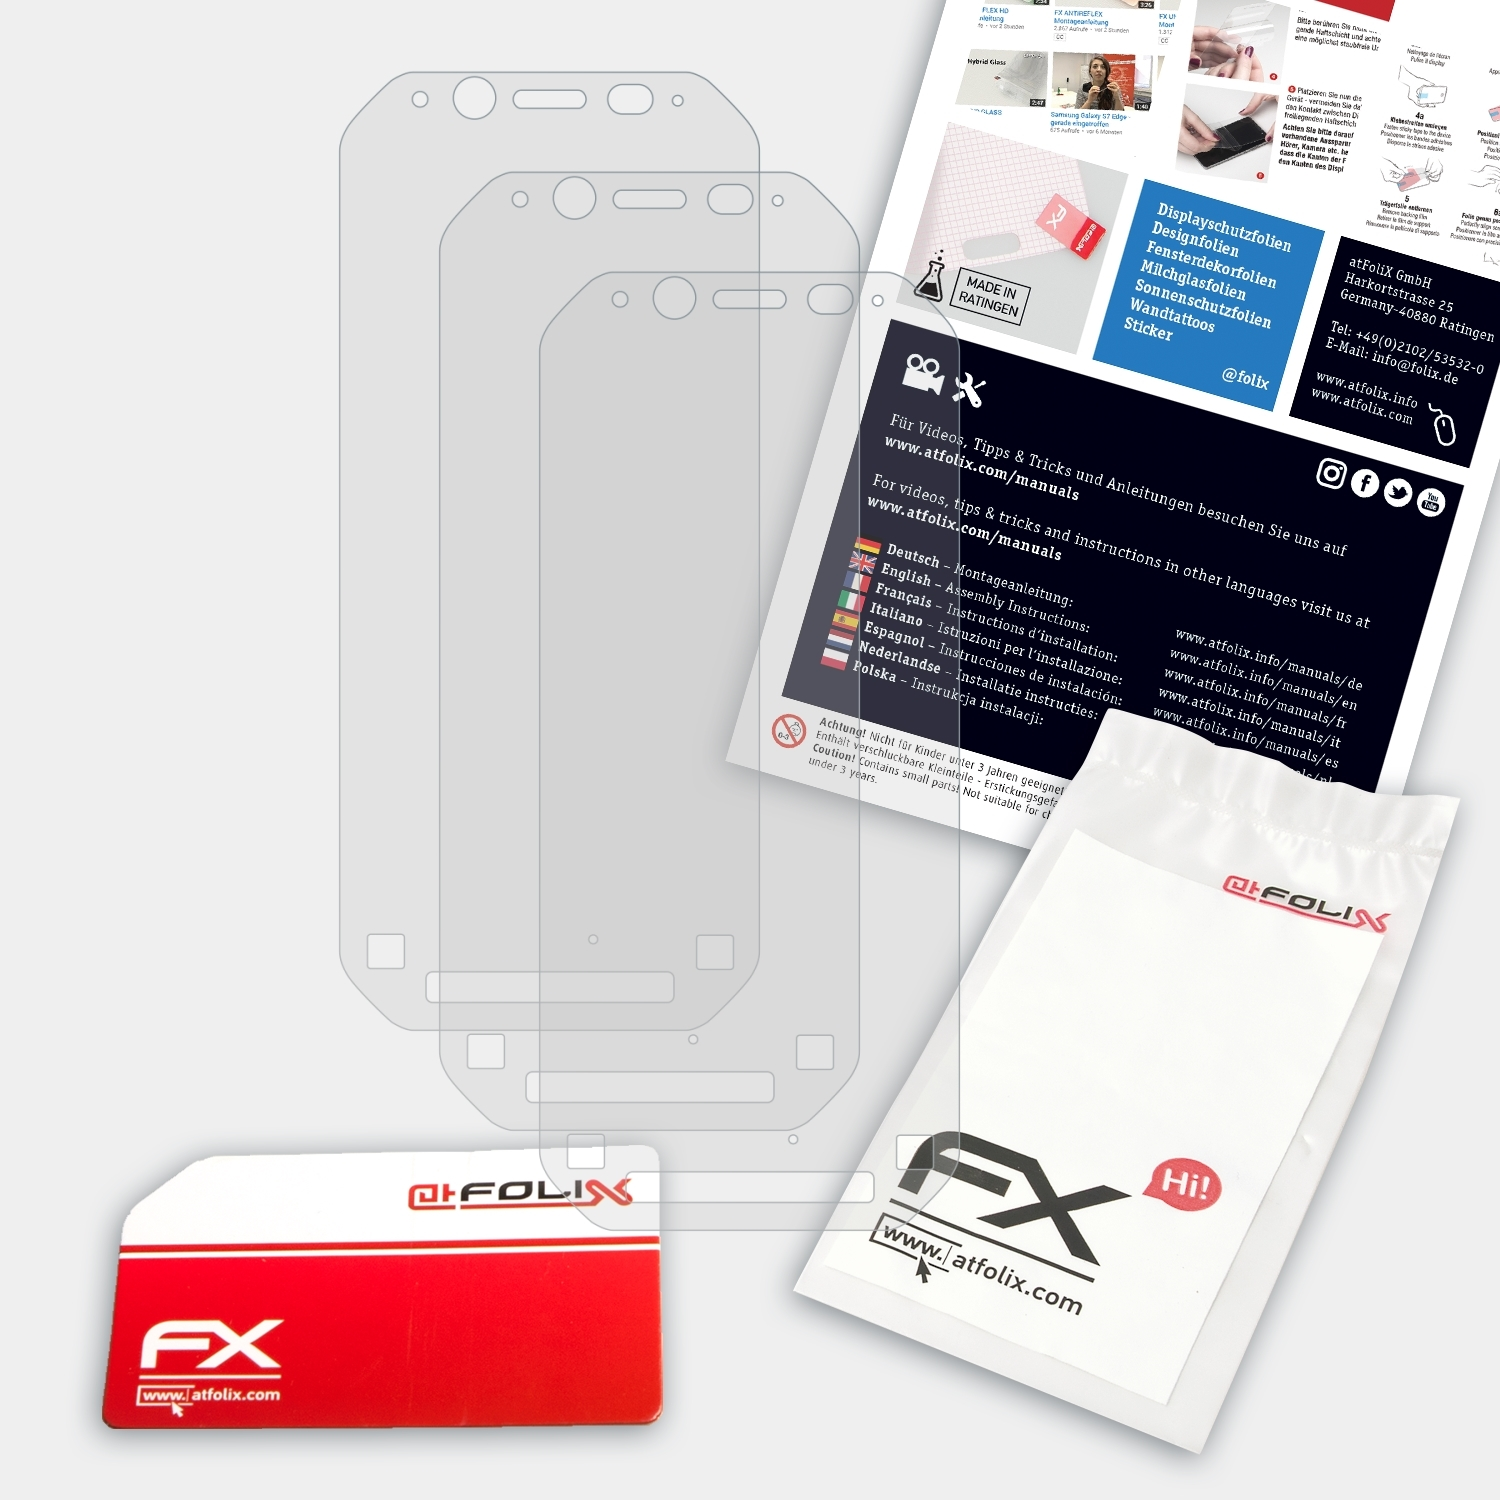 Toughbook FZ-N1) Displayschutz(für FX-Antireflex Panasonic 3x ATFOLIX